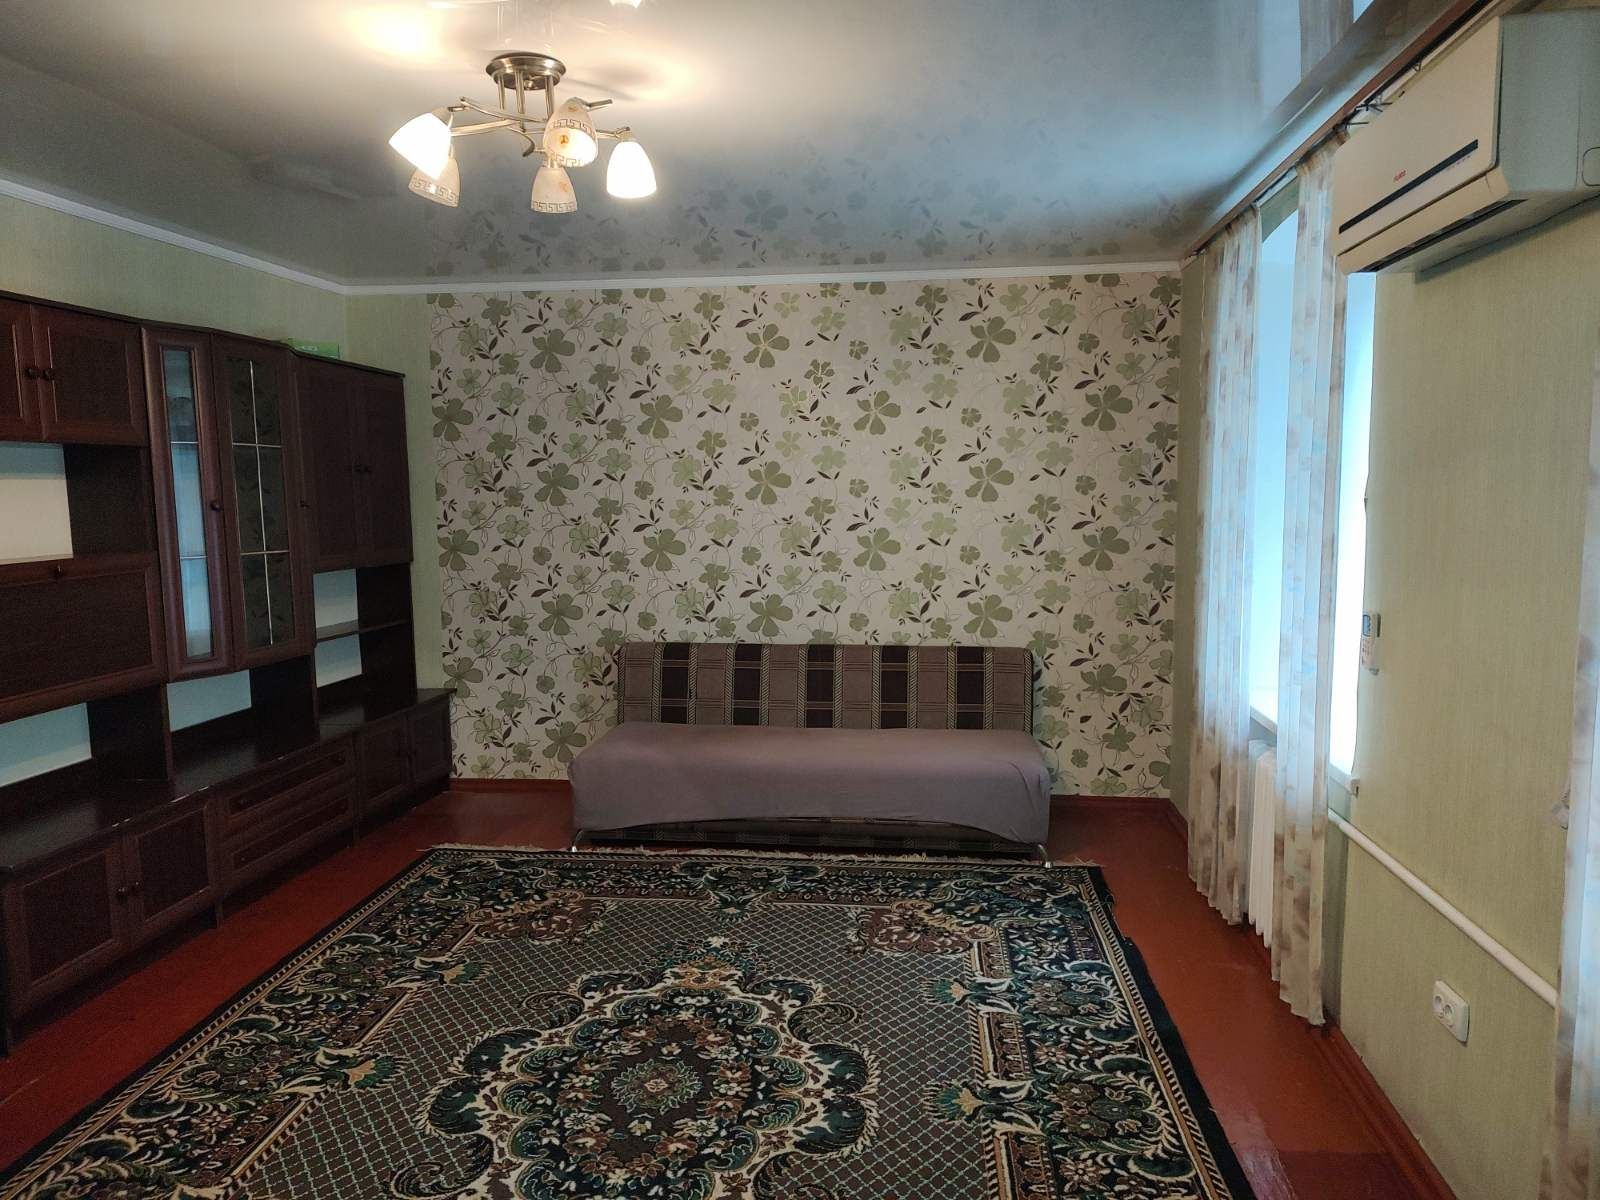 Продам собственную квартиру в центре города,  Пушкинская- Наваринская